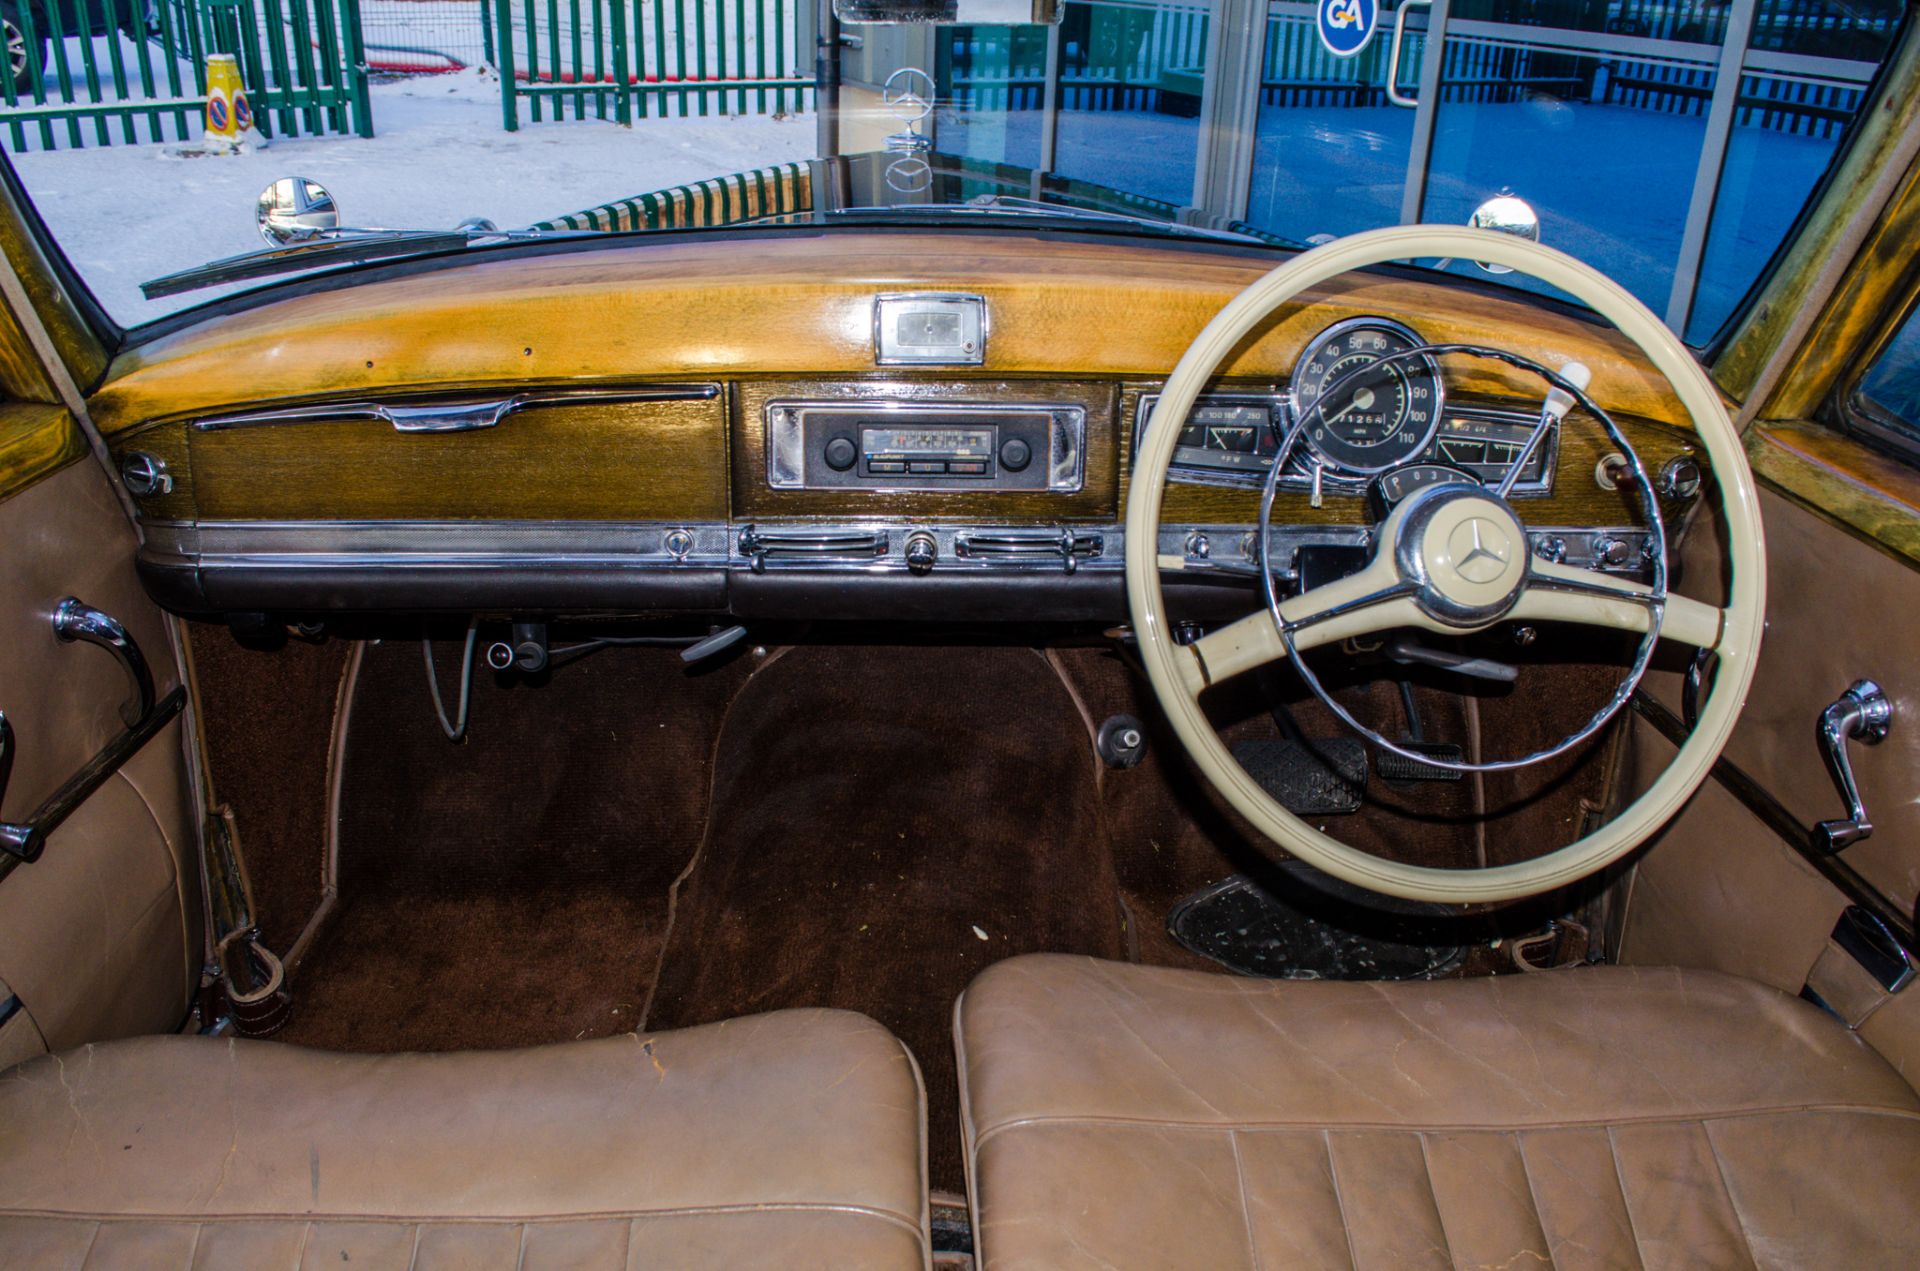 1956 Mercedes Benz 300 Adenauer 3 litre automatic 4 door saloon - Image 49 of 63